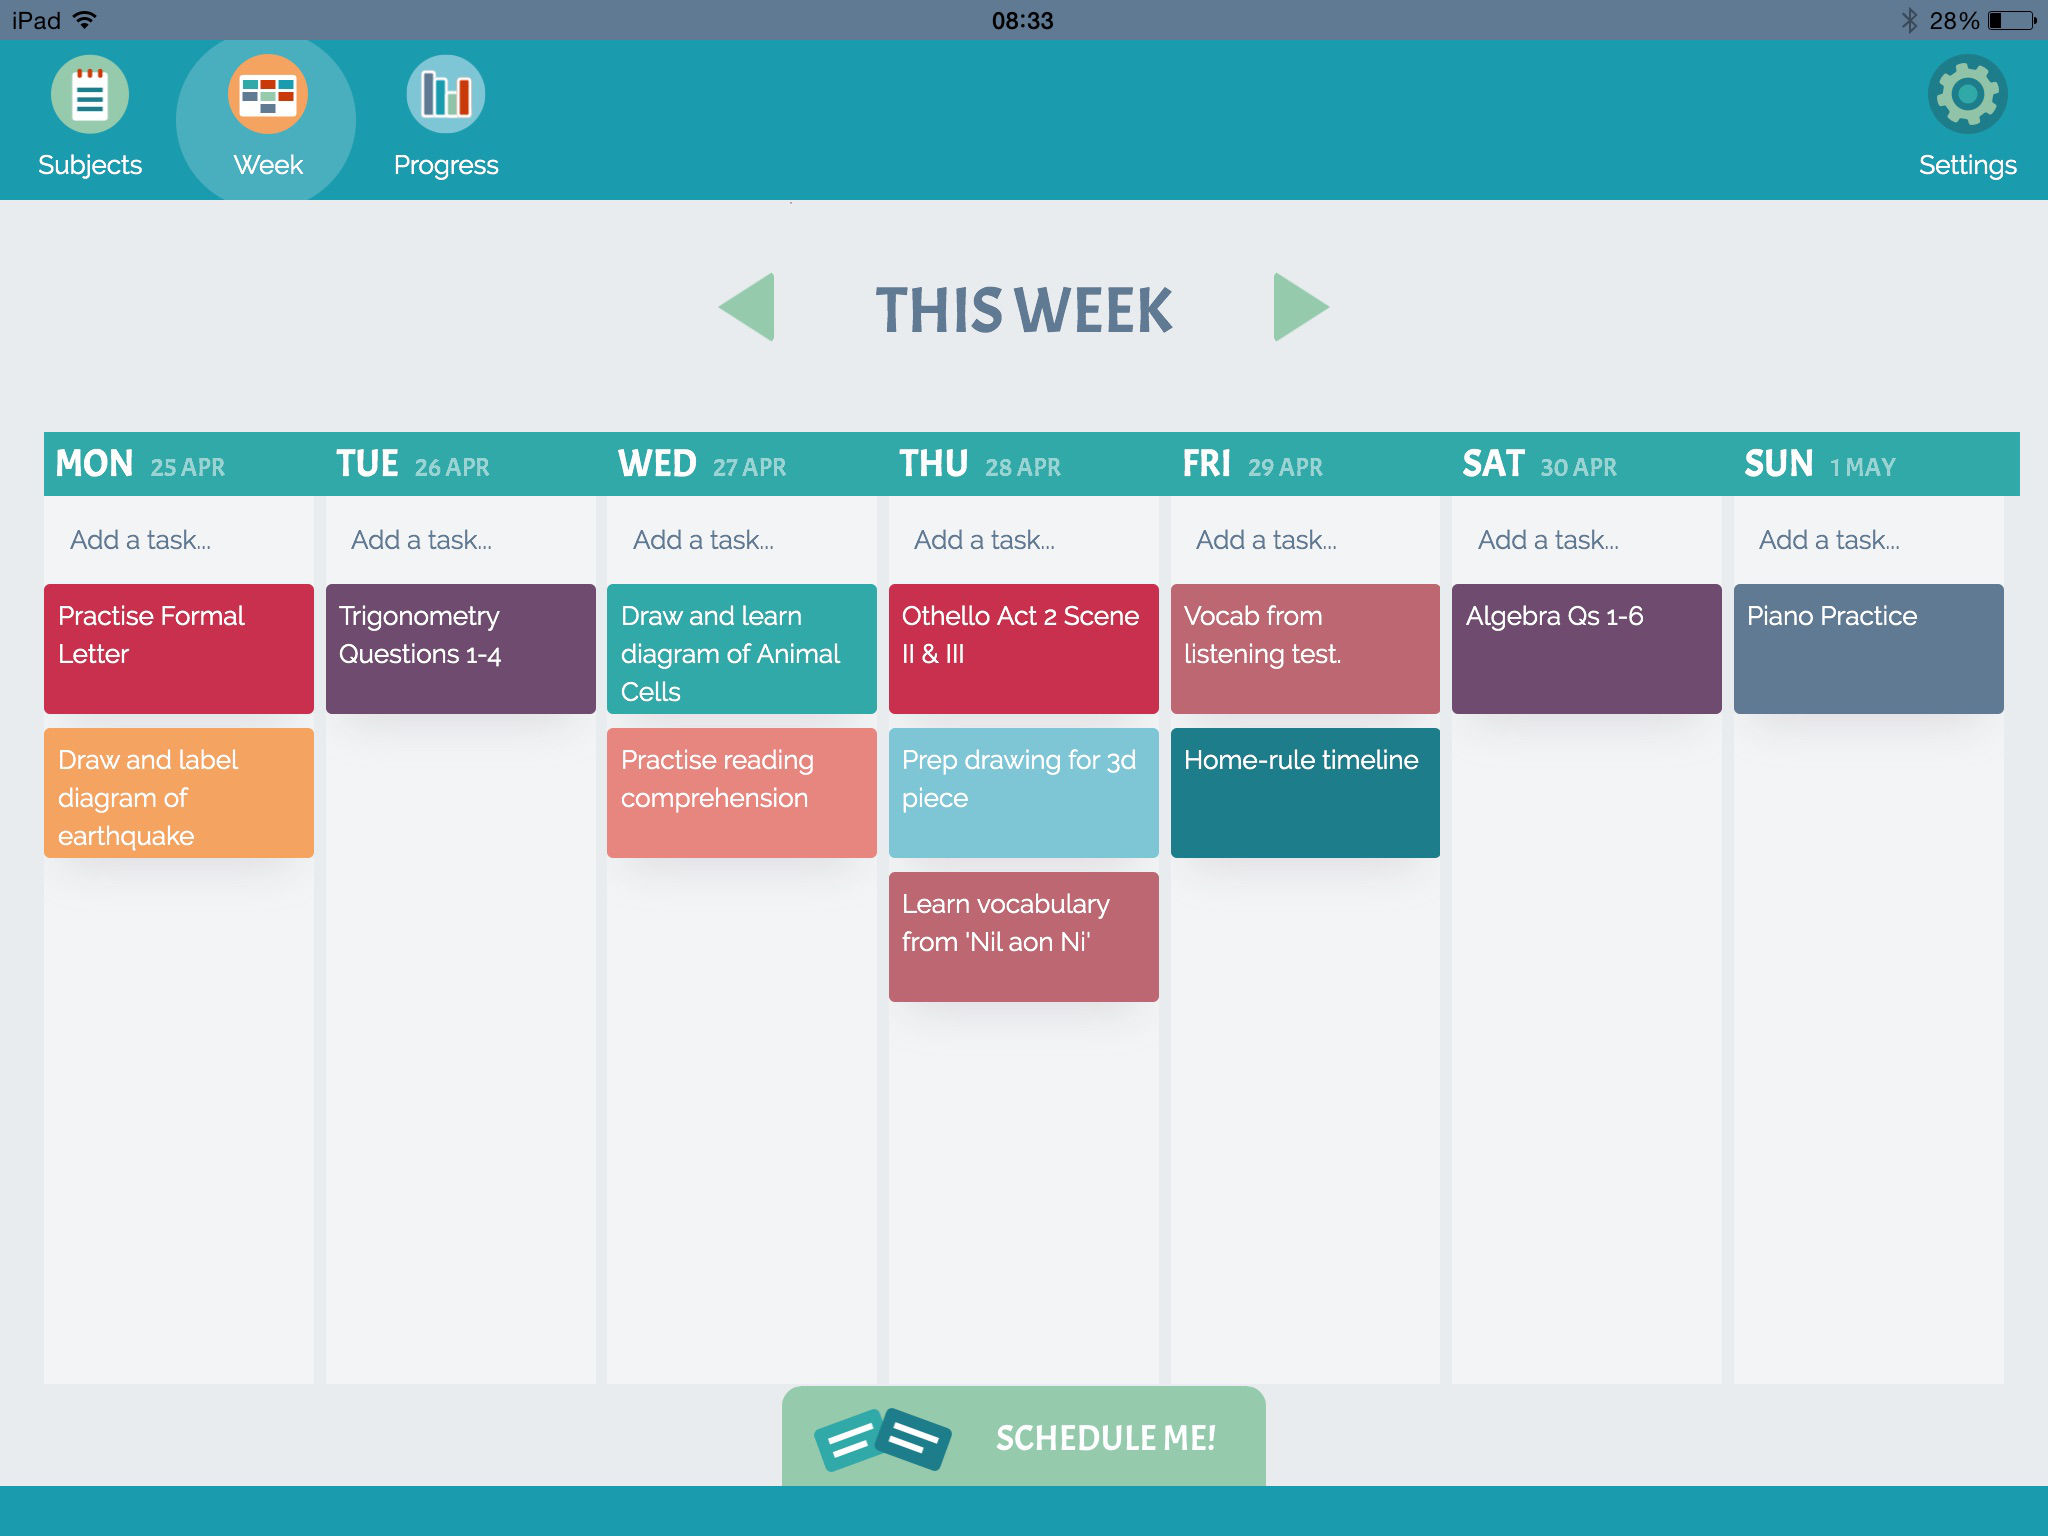 Weekly Plan screen